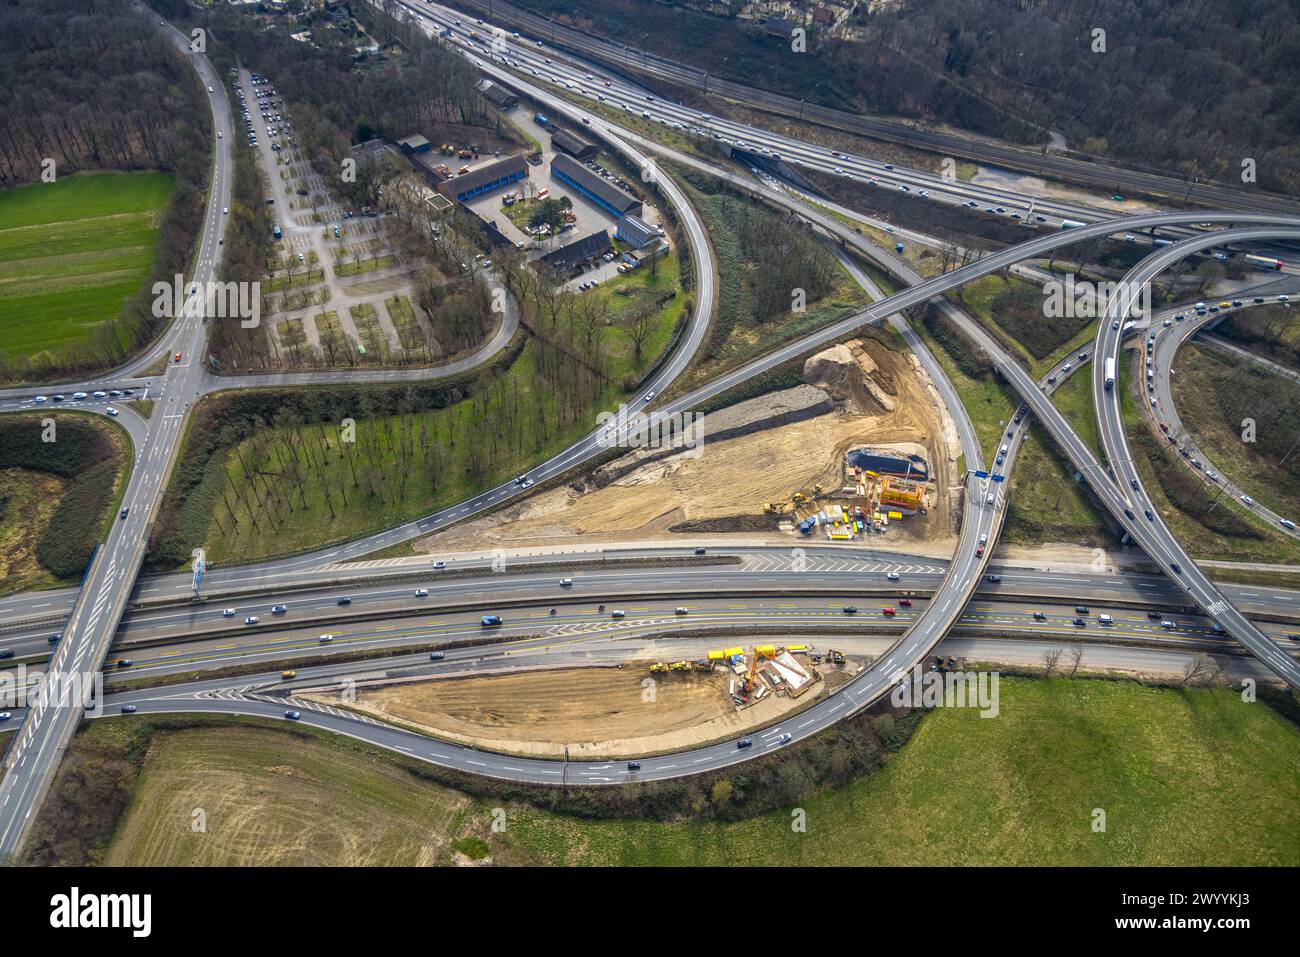 Vista aérea, intercambio Kaiserberg de las autopistas A40 y A3 con obras de construcción, Duissern, Duisburg, zona del Ruhr, Renania del Norte-Westfalia, Alemania Foto de stock